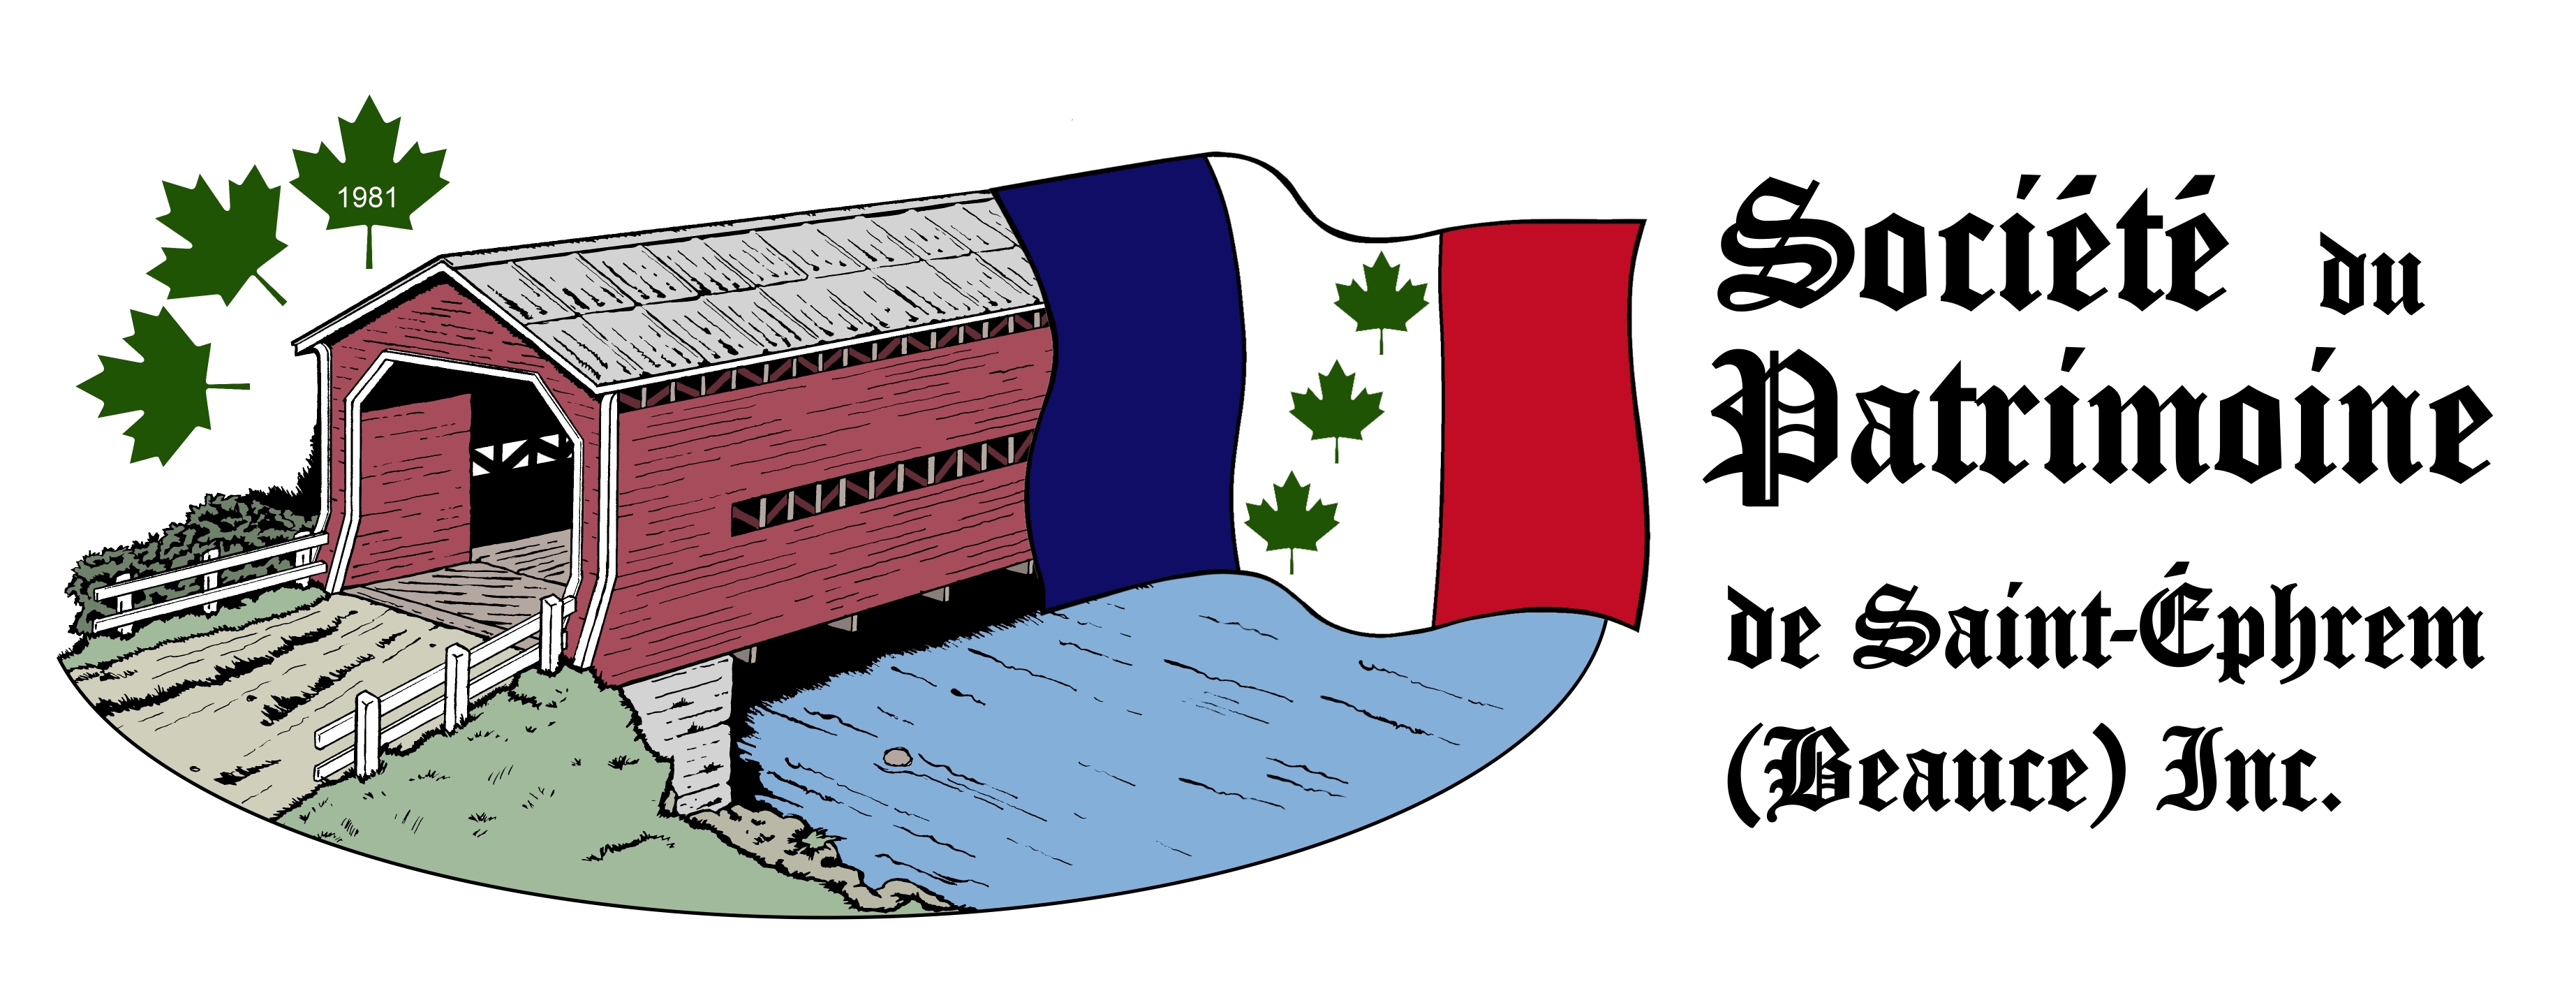 Société du patrimoine de Saint-Éphrem (Beauce) Inc.